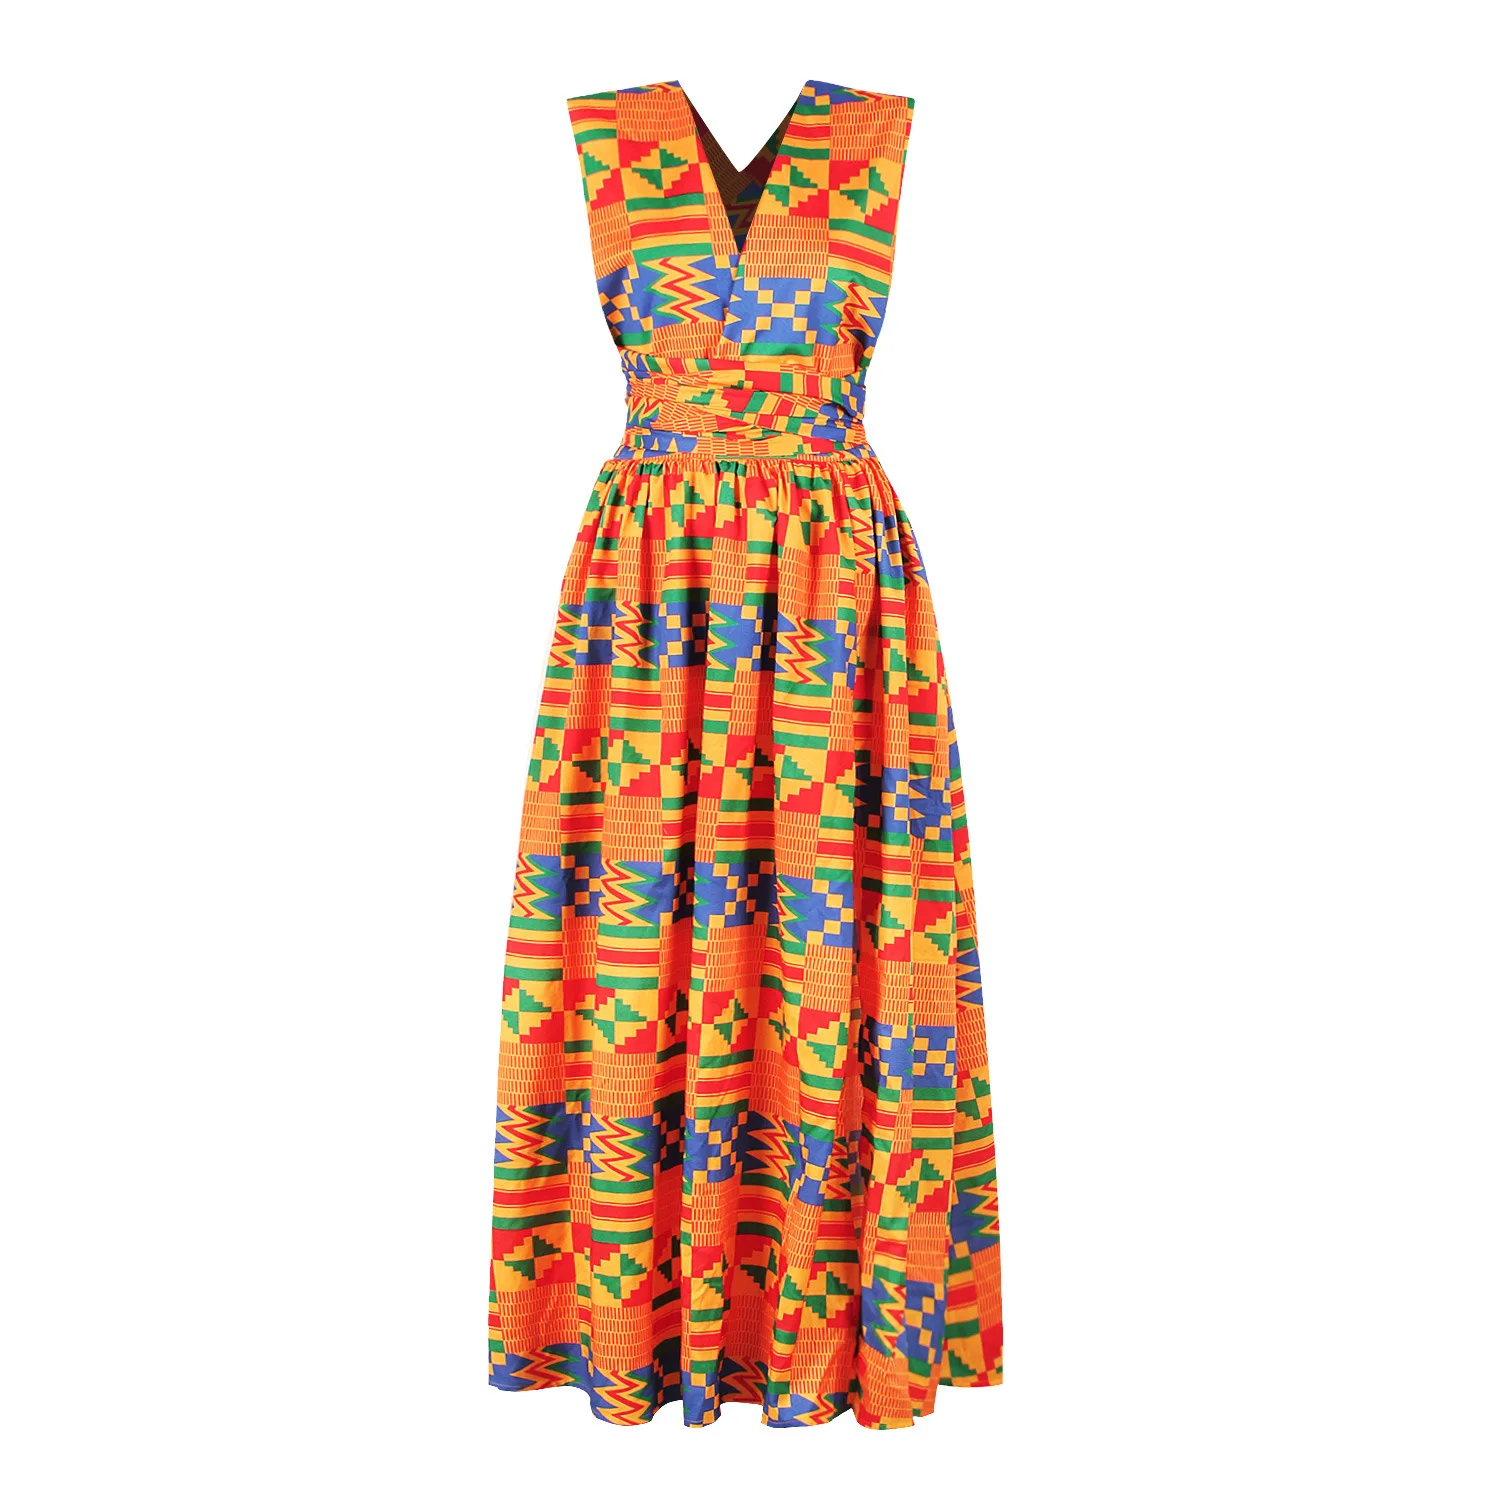 YIZHIQIU fashion african kitenge dress designs for women